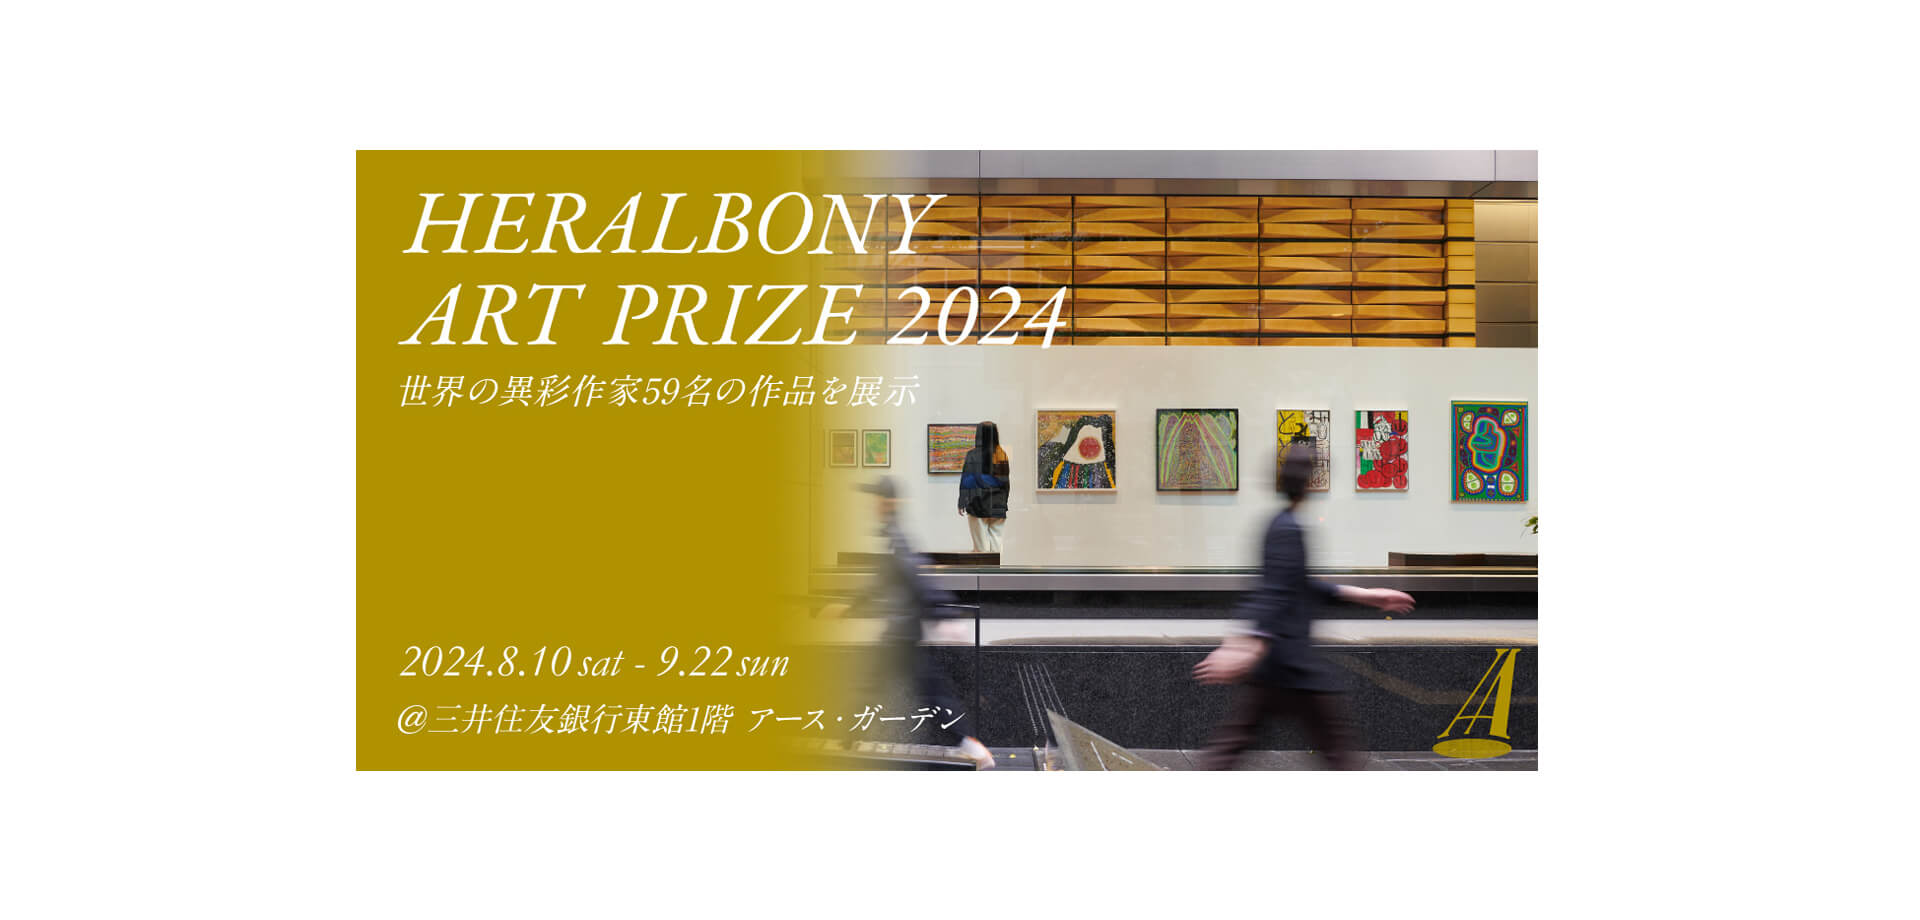 HERALBONY Art Prize 2024 Exhibition バナー